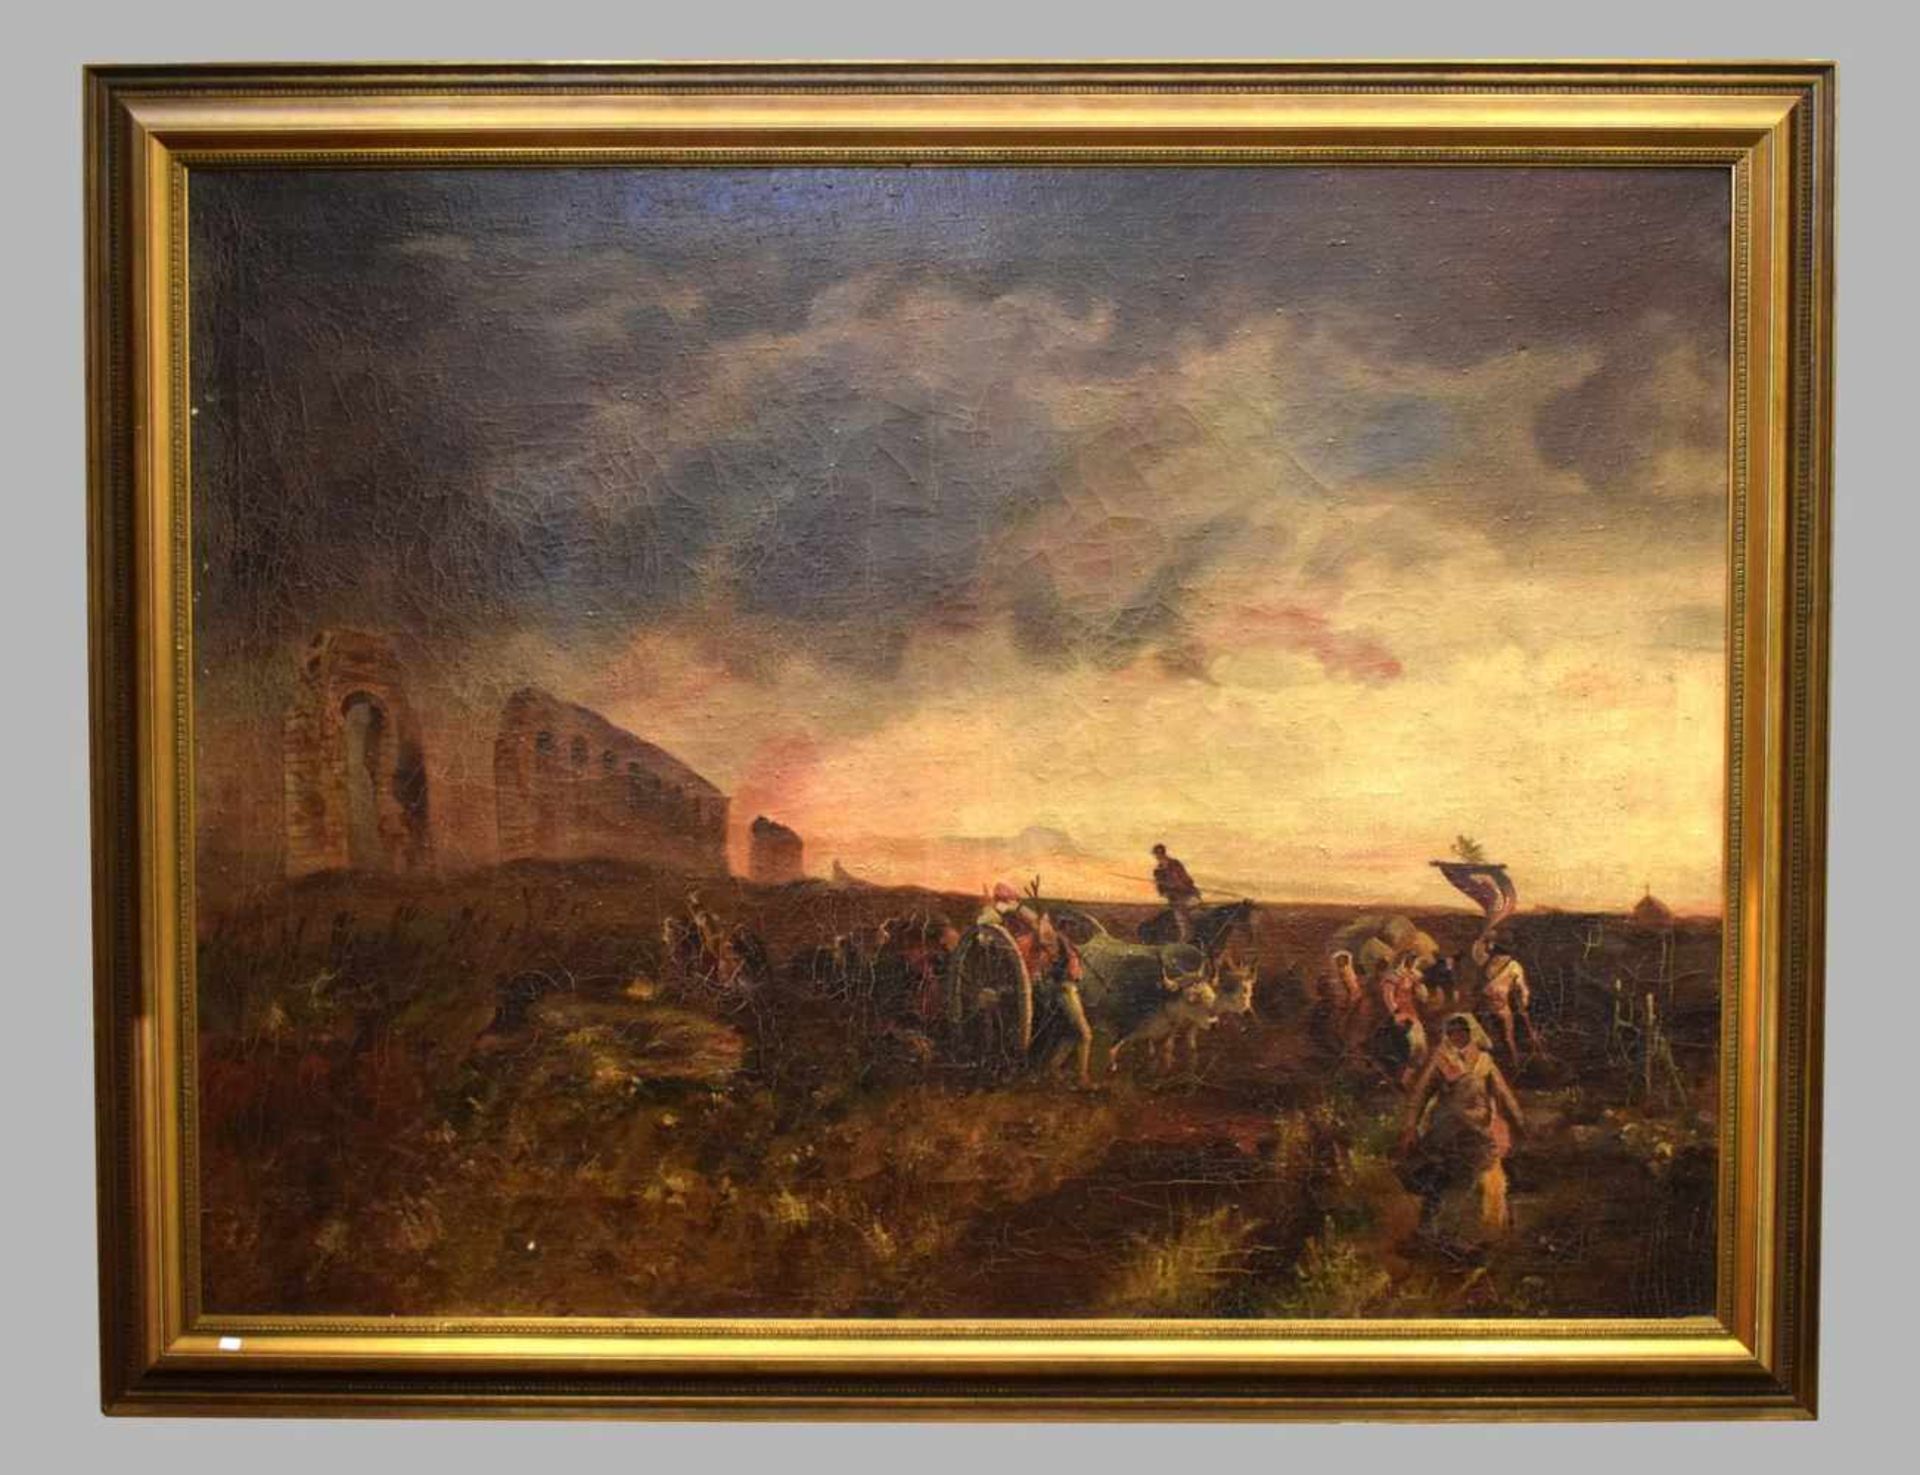 Unbekannter Maler 19. Jh., italienische Bauern bei der Arbeit, mit Ochsenkarren, im Hintergrund